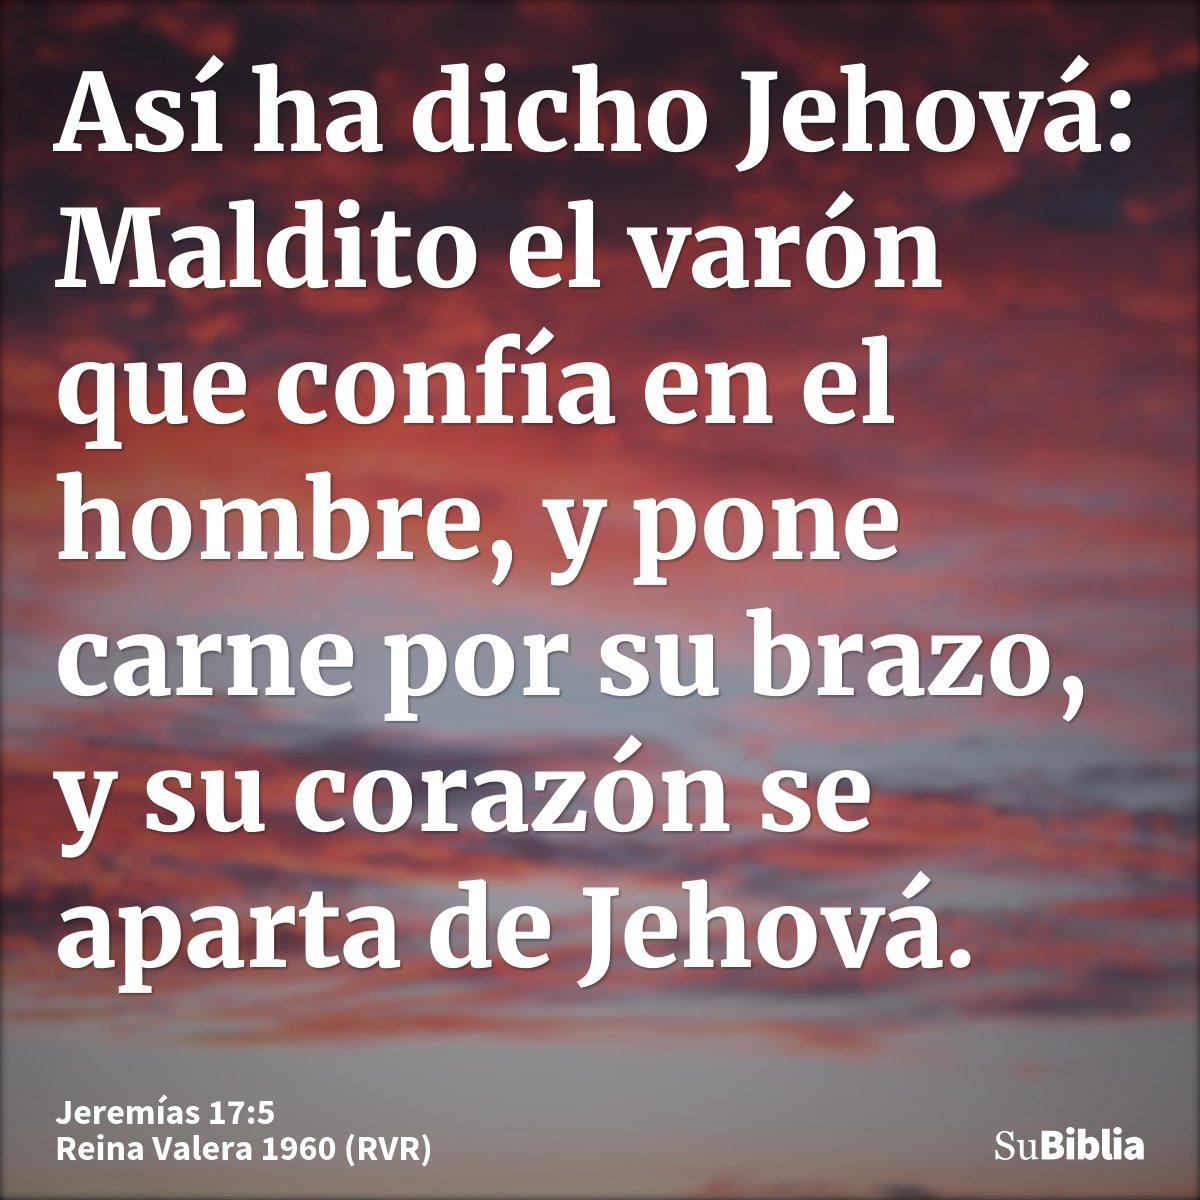 Así ha dicho Jehová: Maldito el varón que confía en el hombre, y pone carne por su brazo, y su corazón se aparta de Jehová.